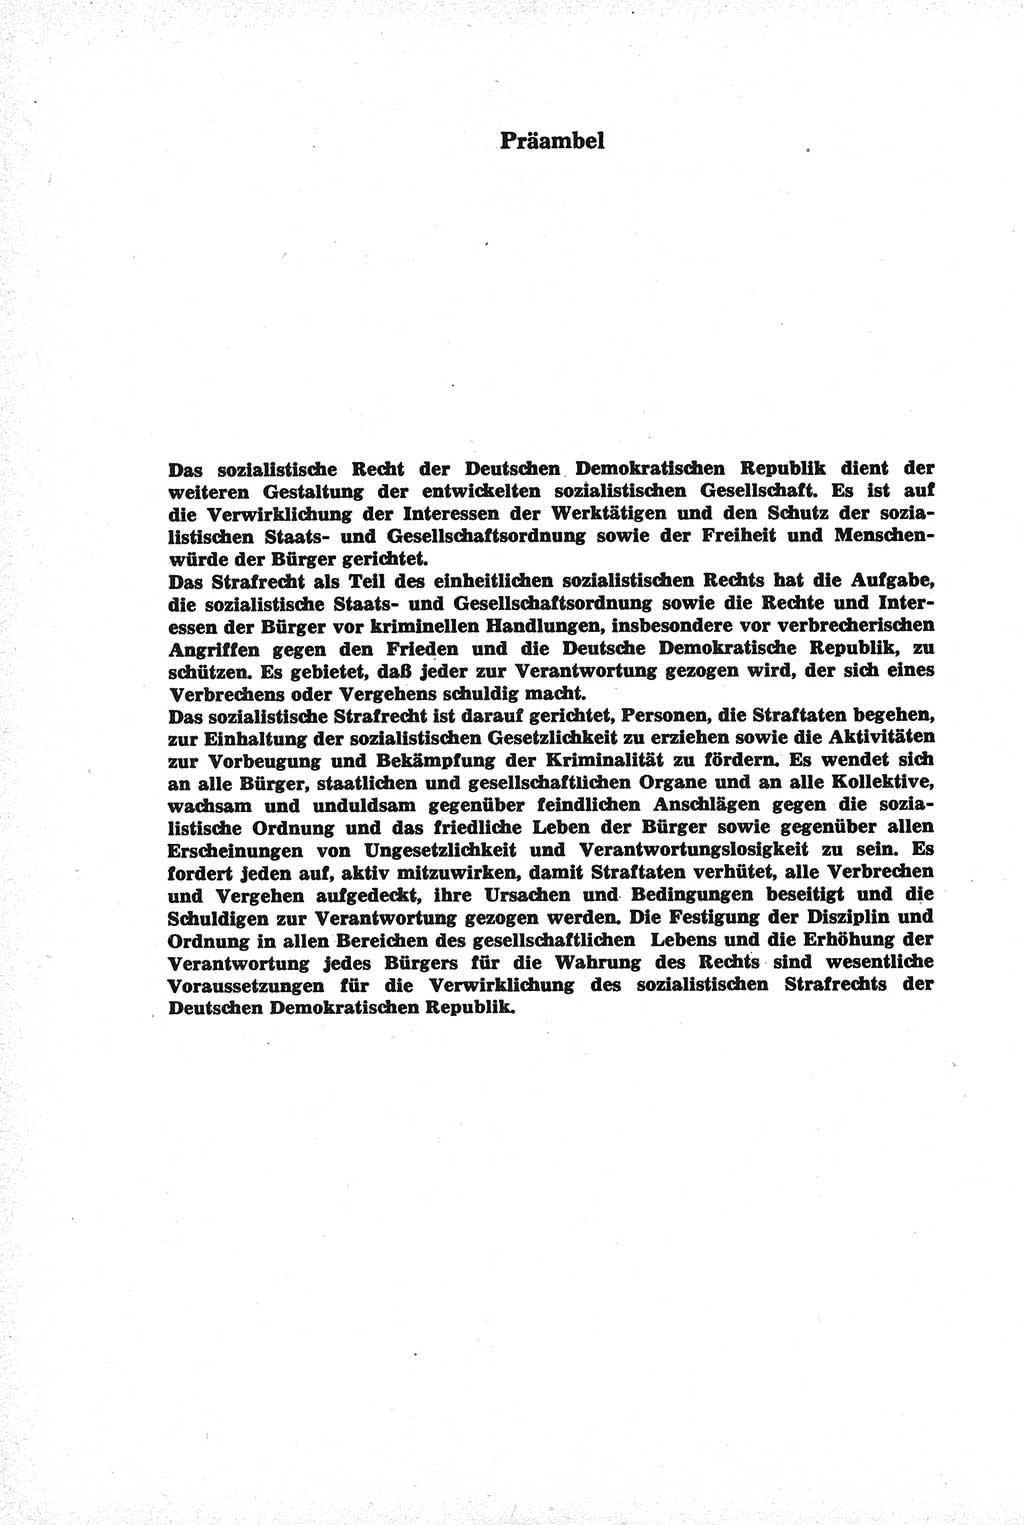 Strafrecht der Deutschen Demokratischen Republik (DDR), Kommentar zum Strafgesetzbuch (StGB) 1981, Seite 16 (Strafr. DDR Komm. StGB 1981, S. 16)